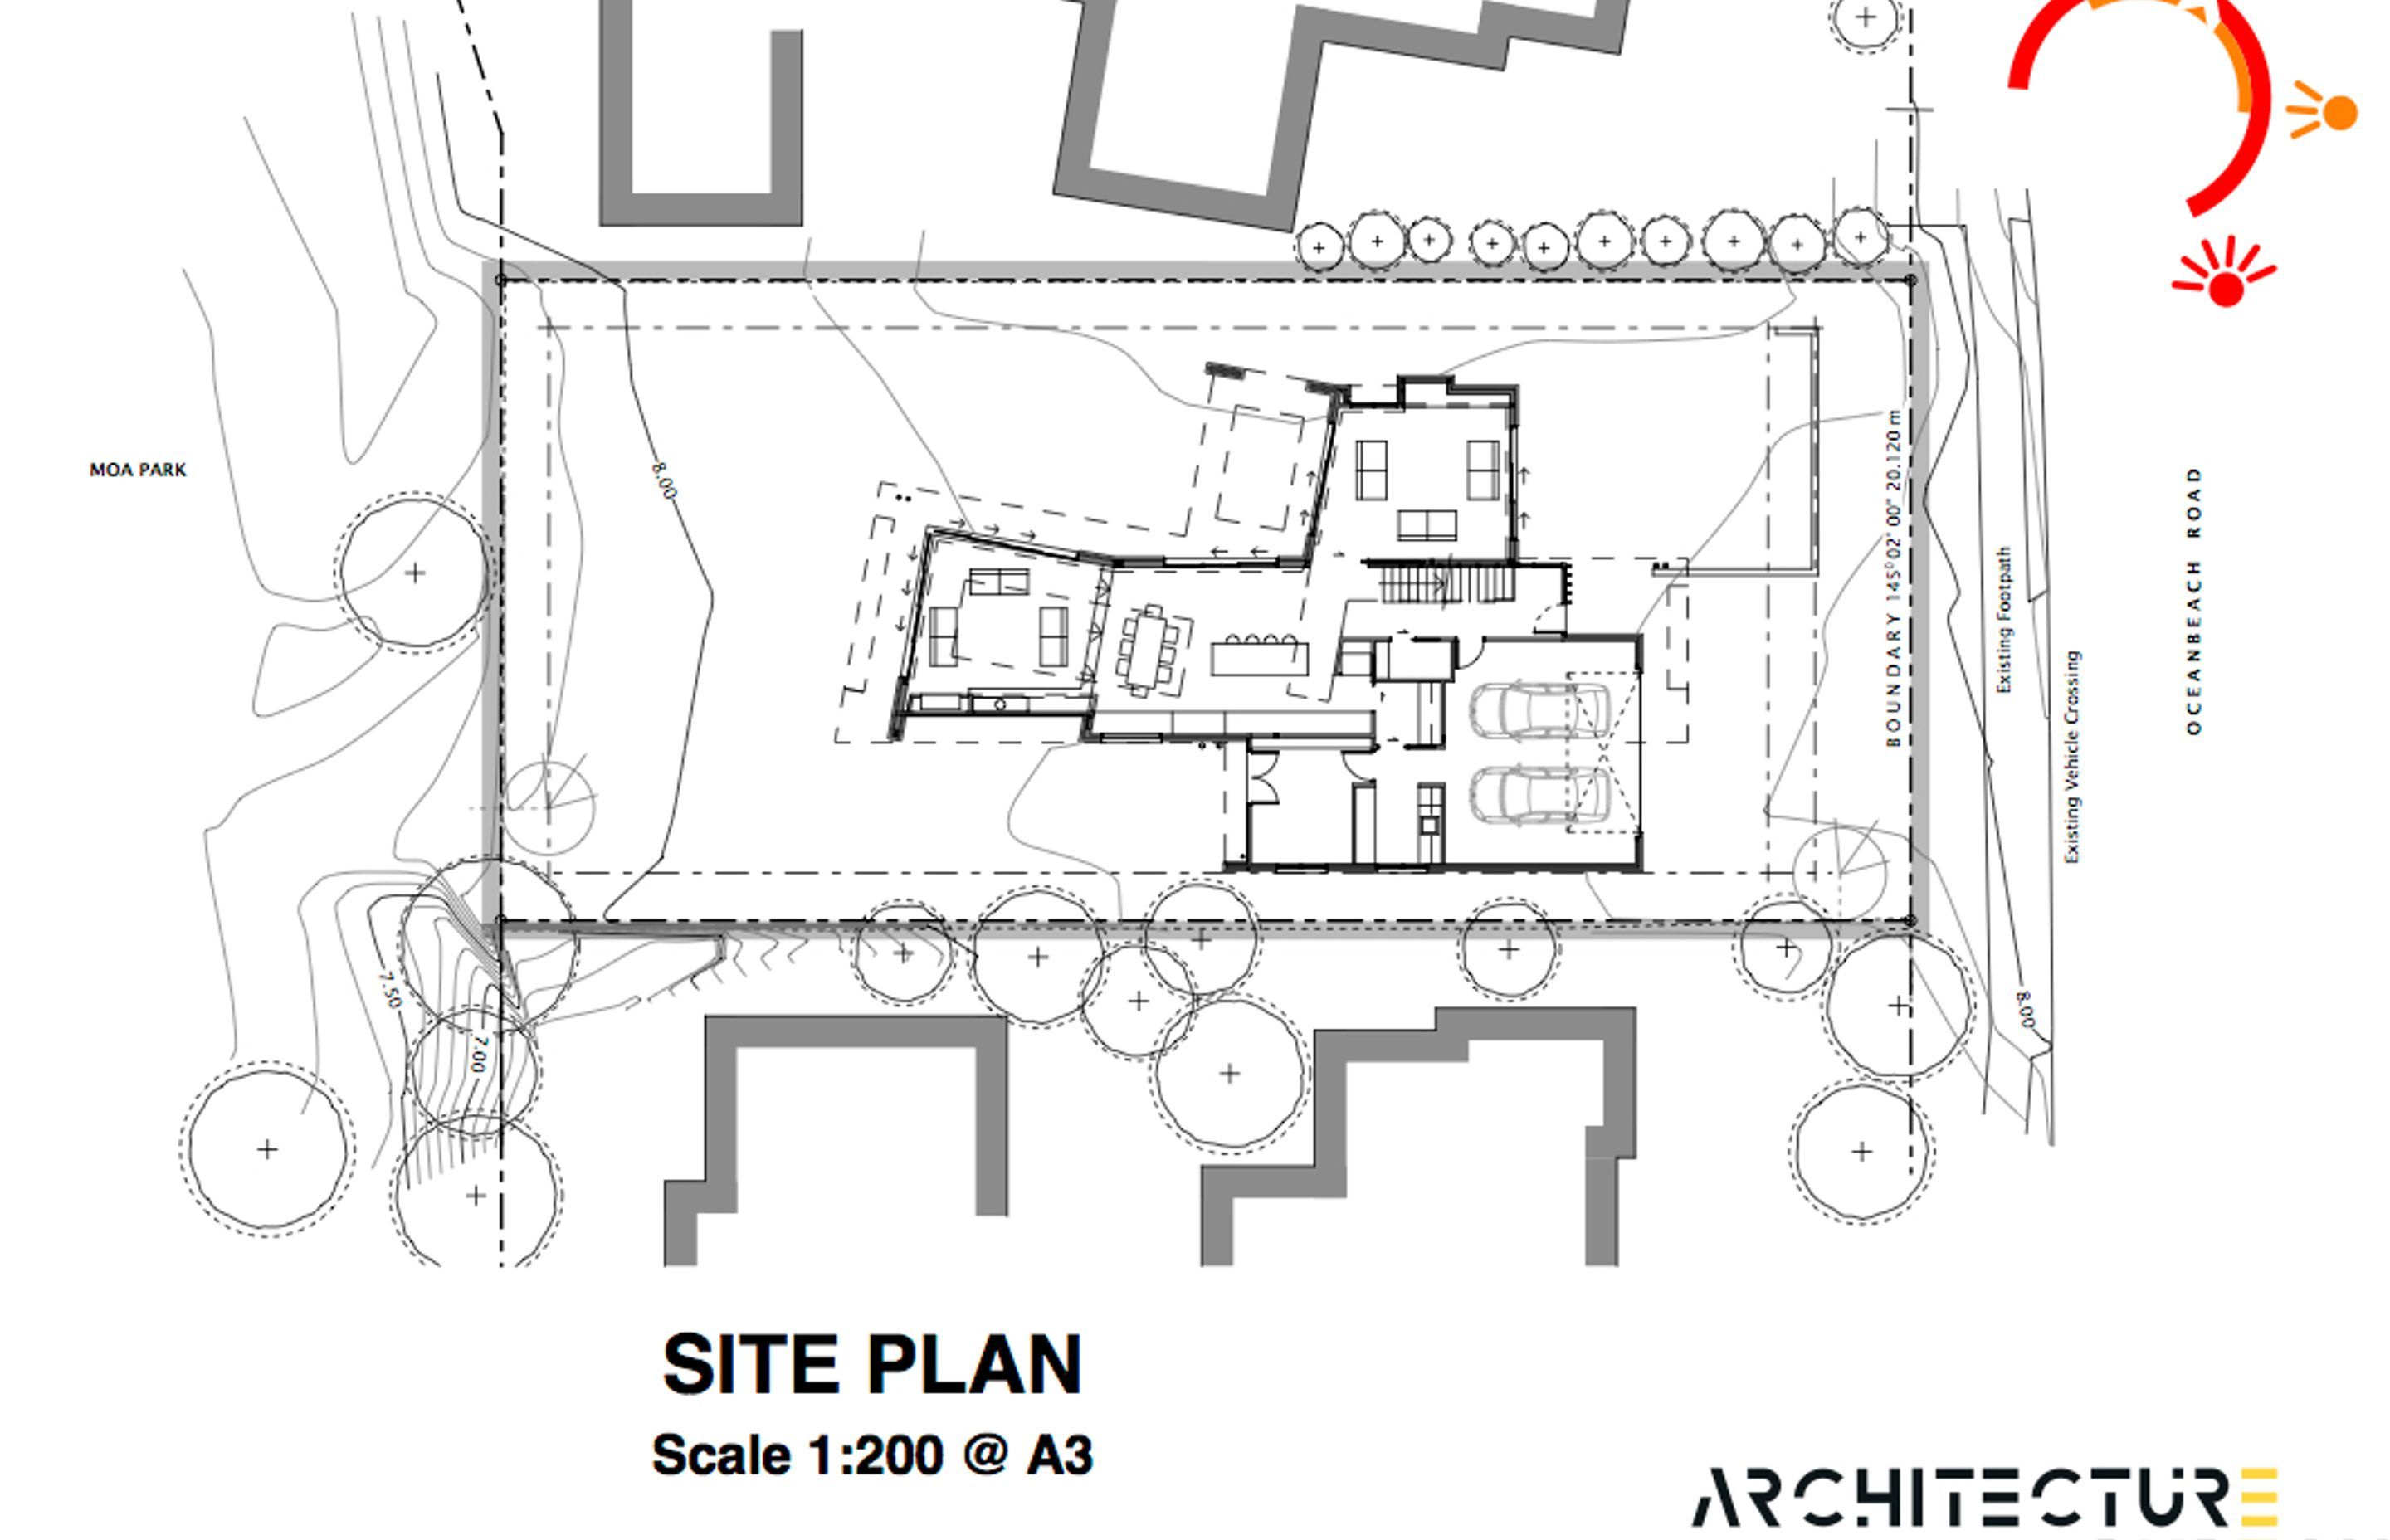 The site plan by Architecture Bureau.